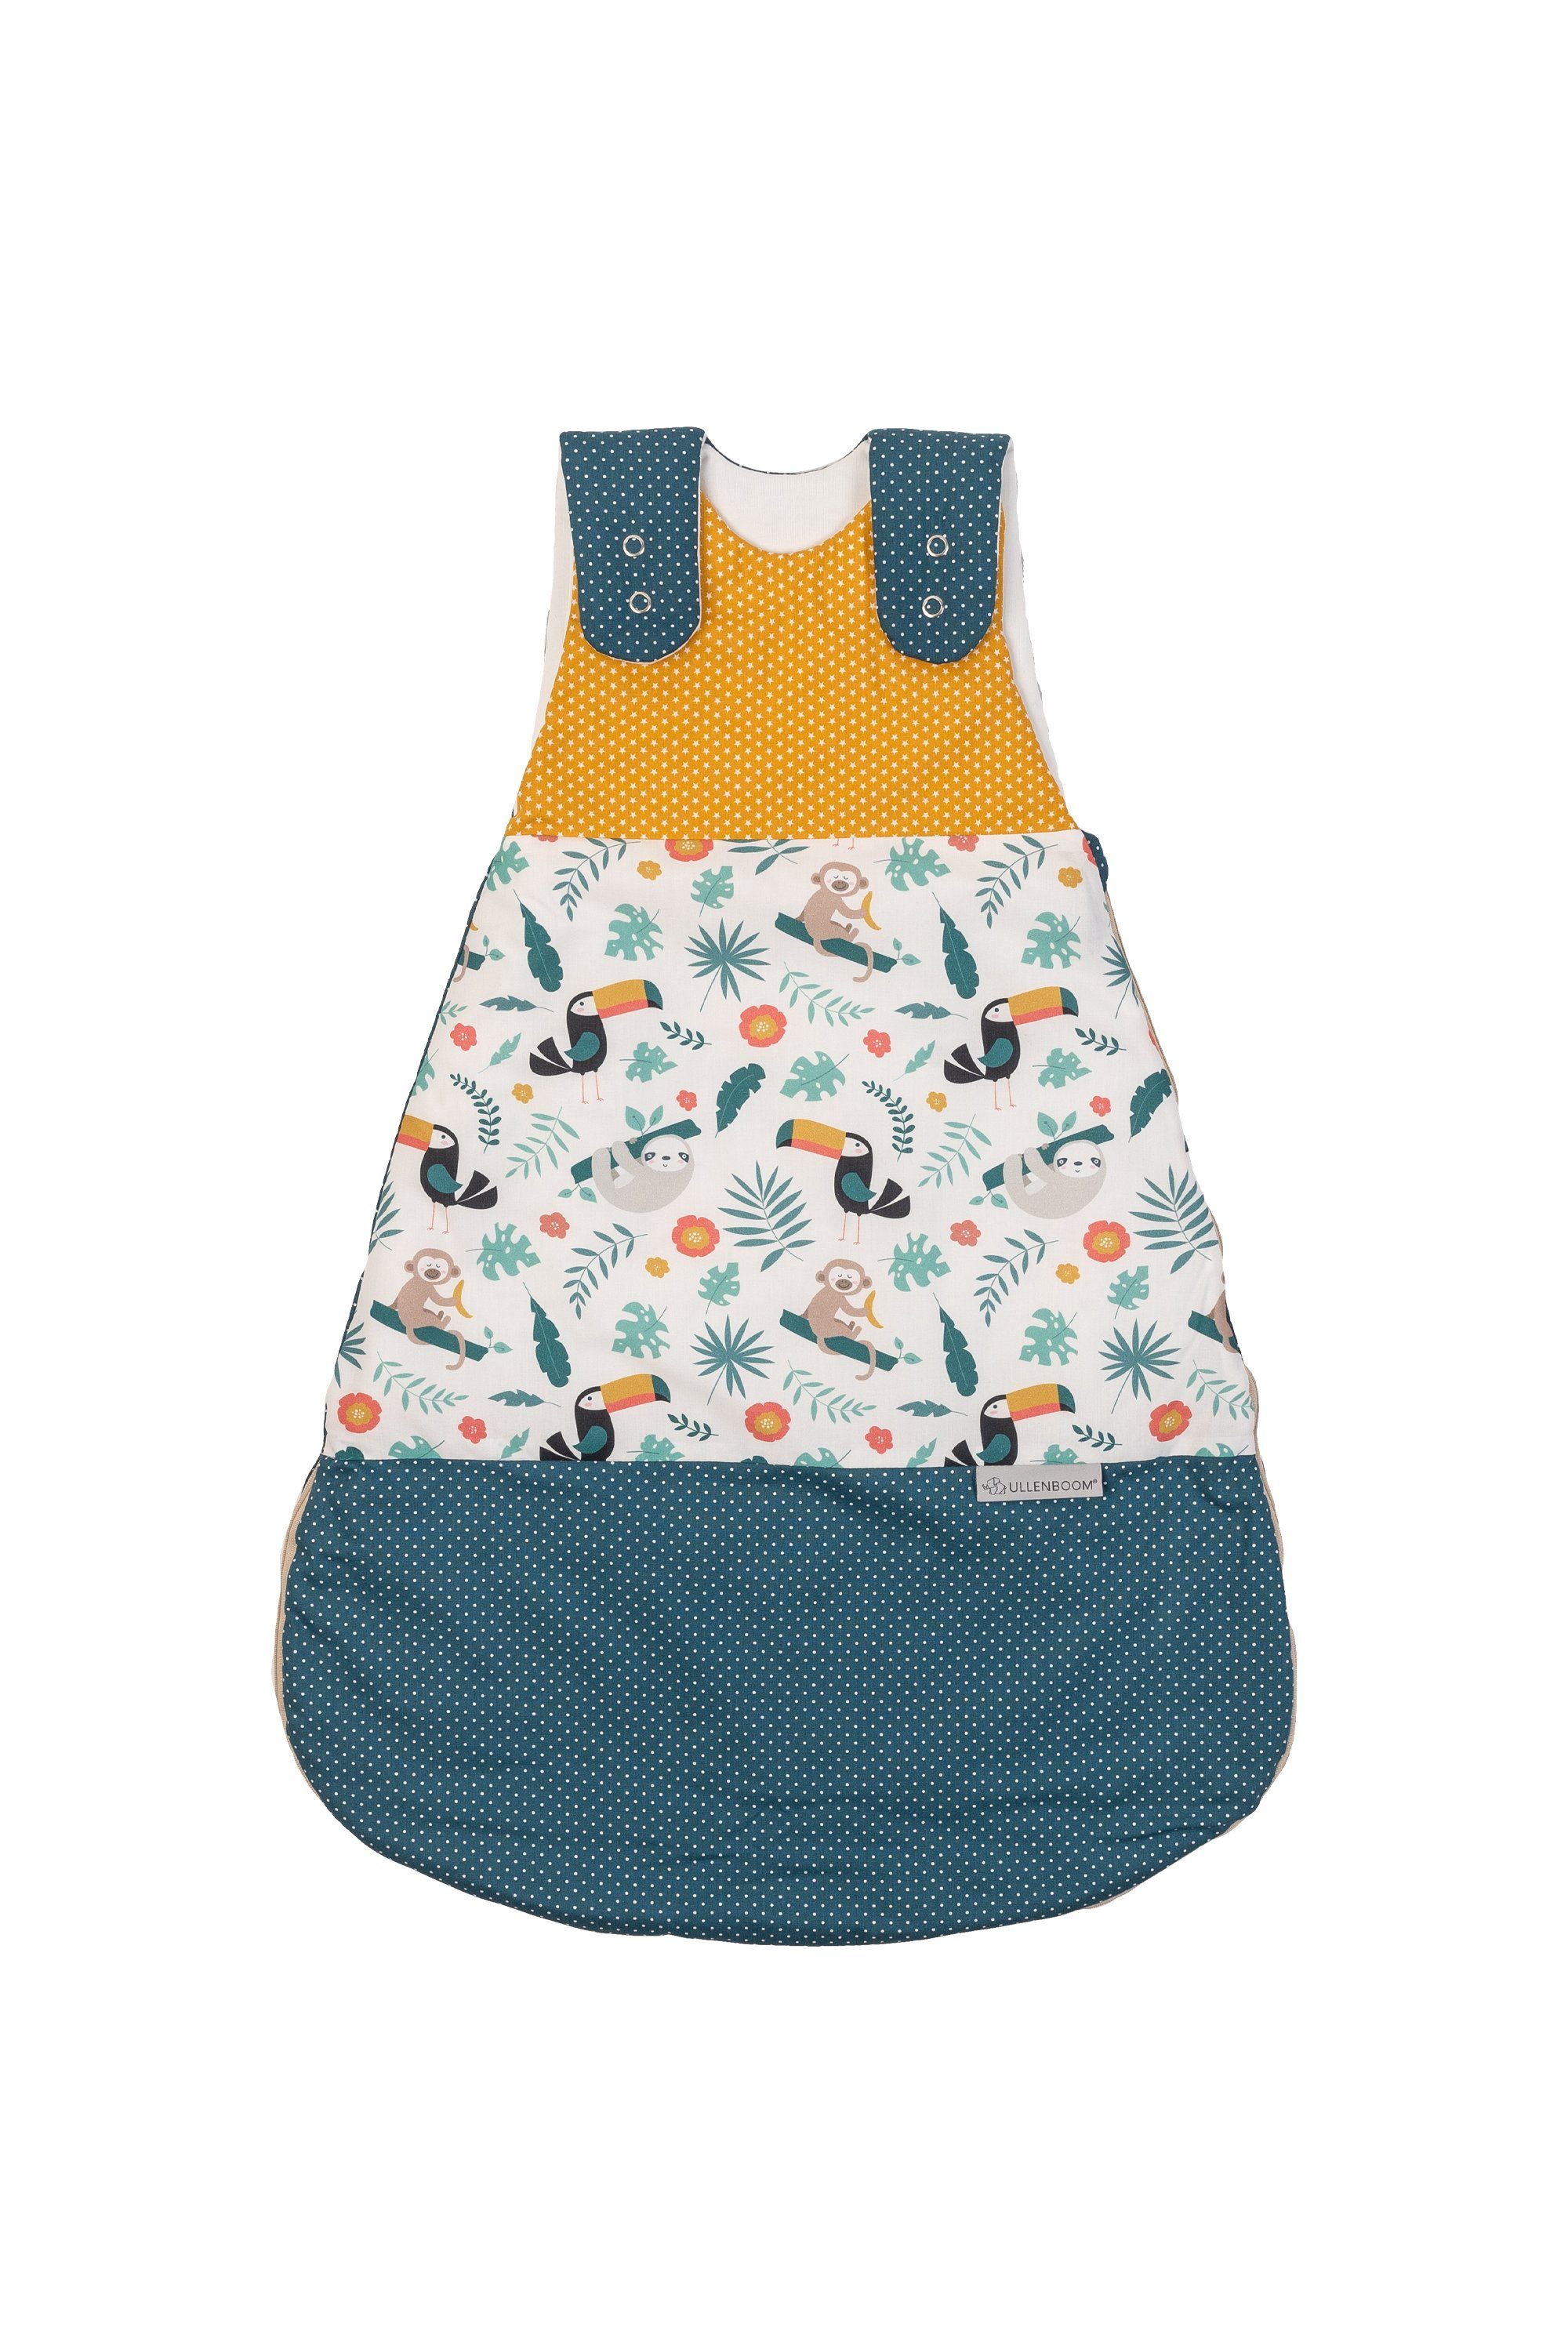 74 x 72 cm geeignet für Kinder im Alter von 0-3 Monaten BlueberryShop Baby-Wickeltuch Baumwolle Schlafsack für Neugeborene 